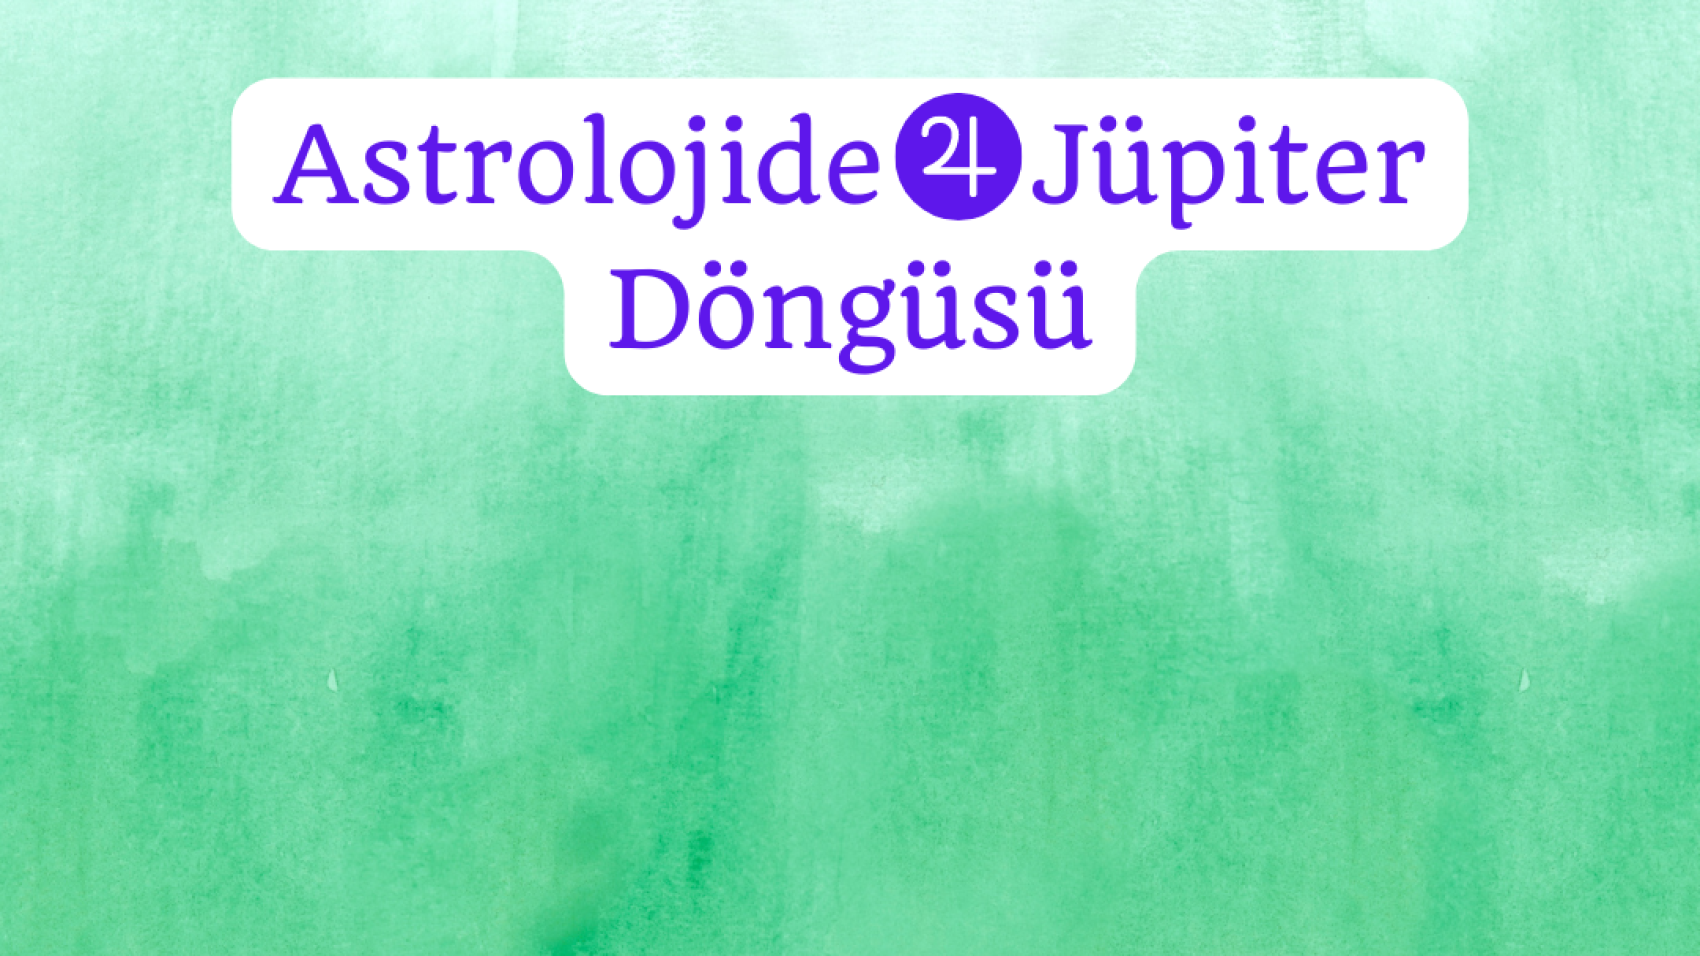 Astrolojide Jupiter Dongusu